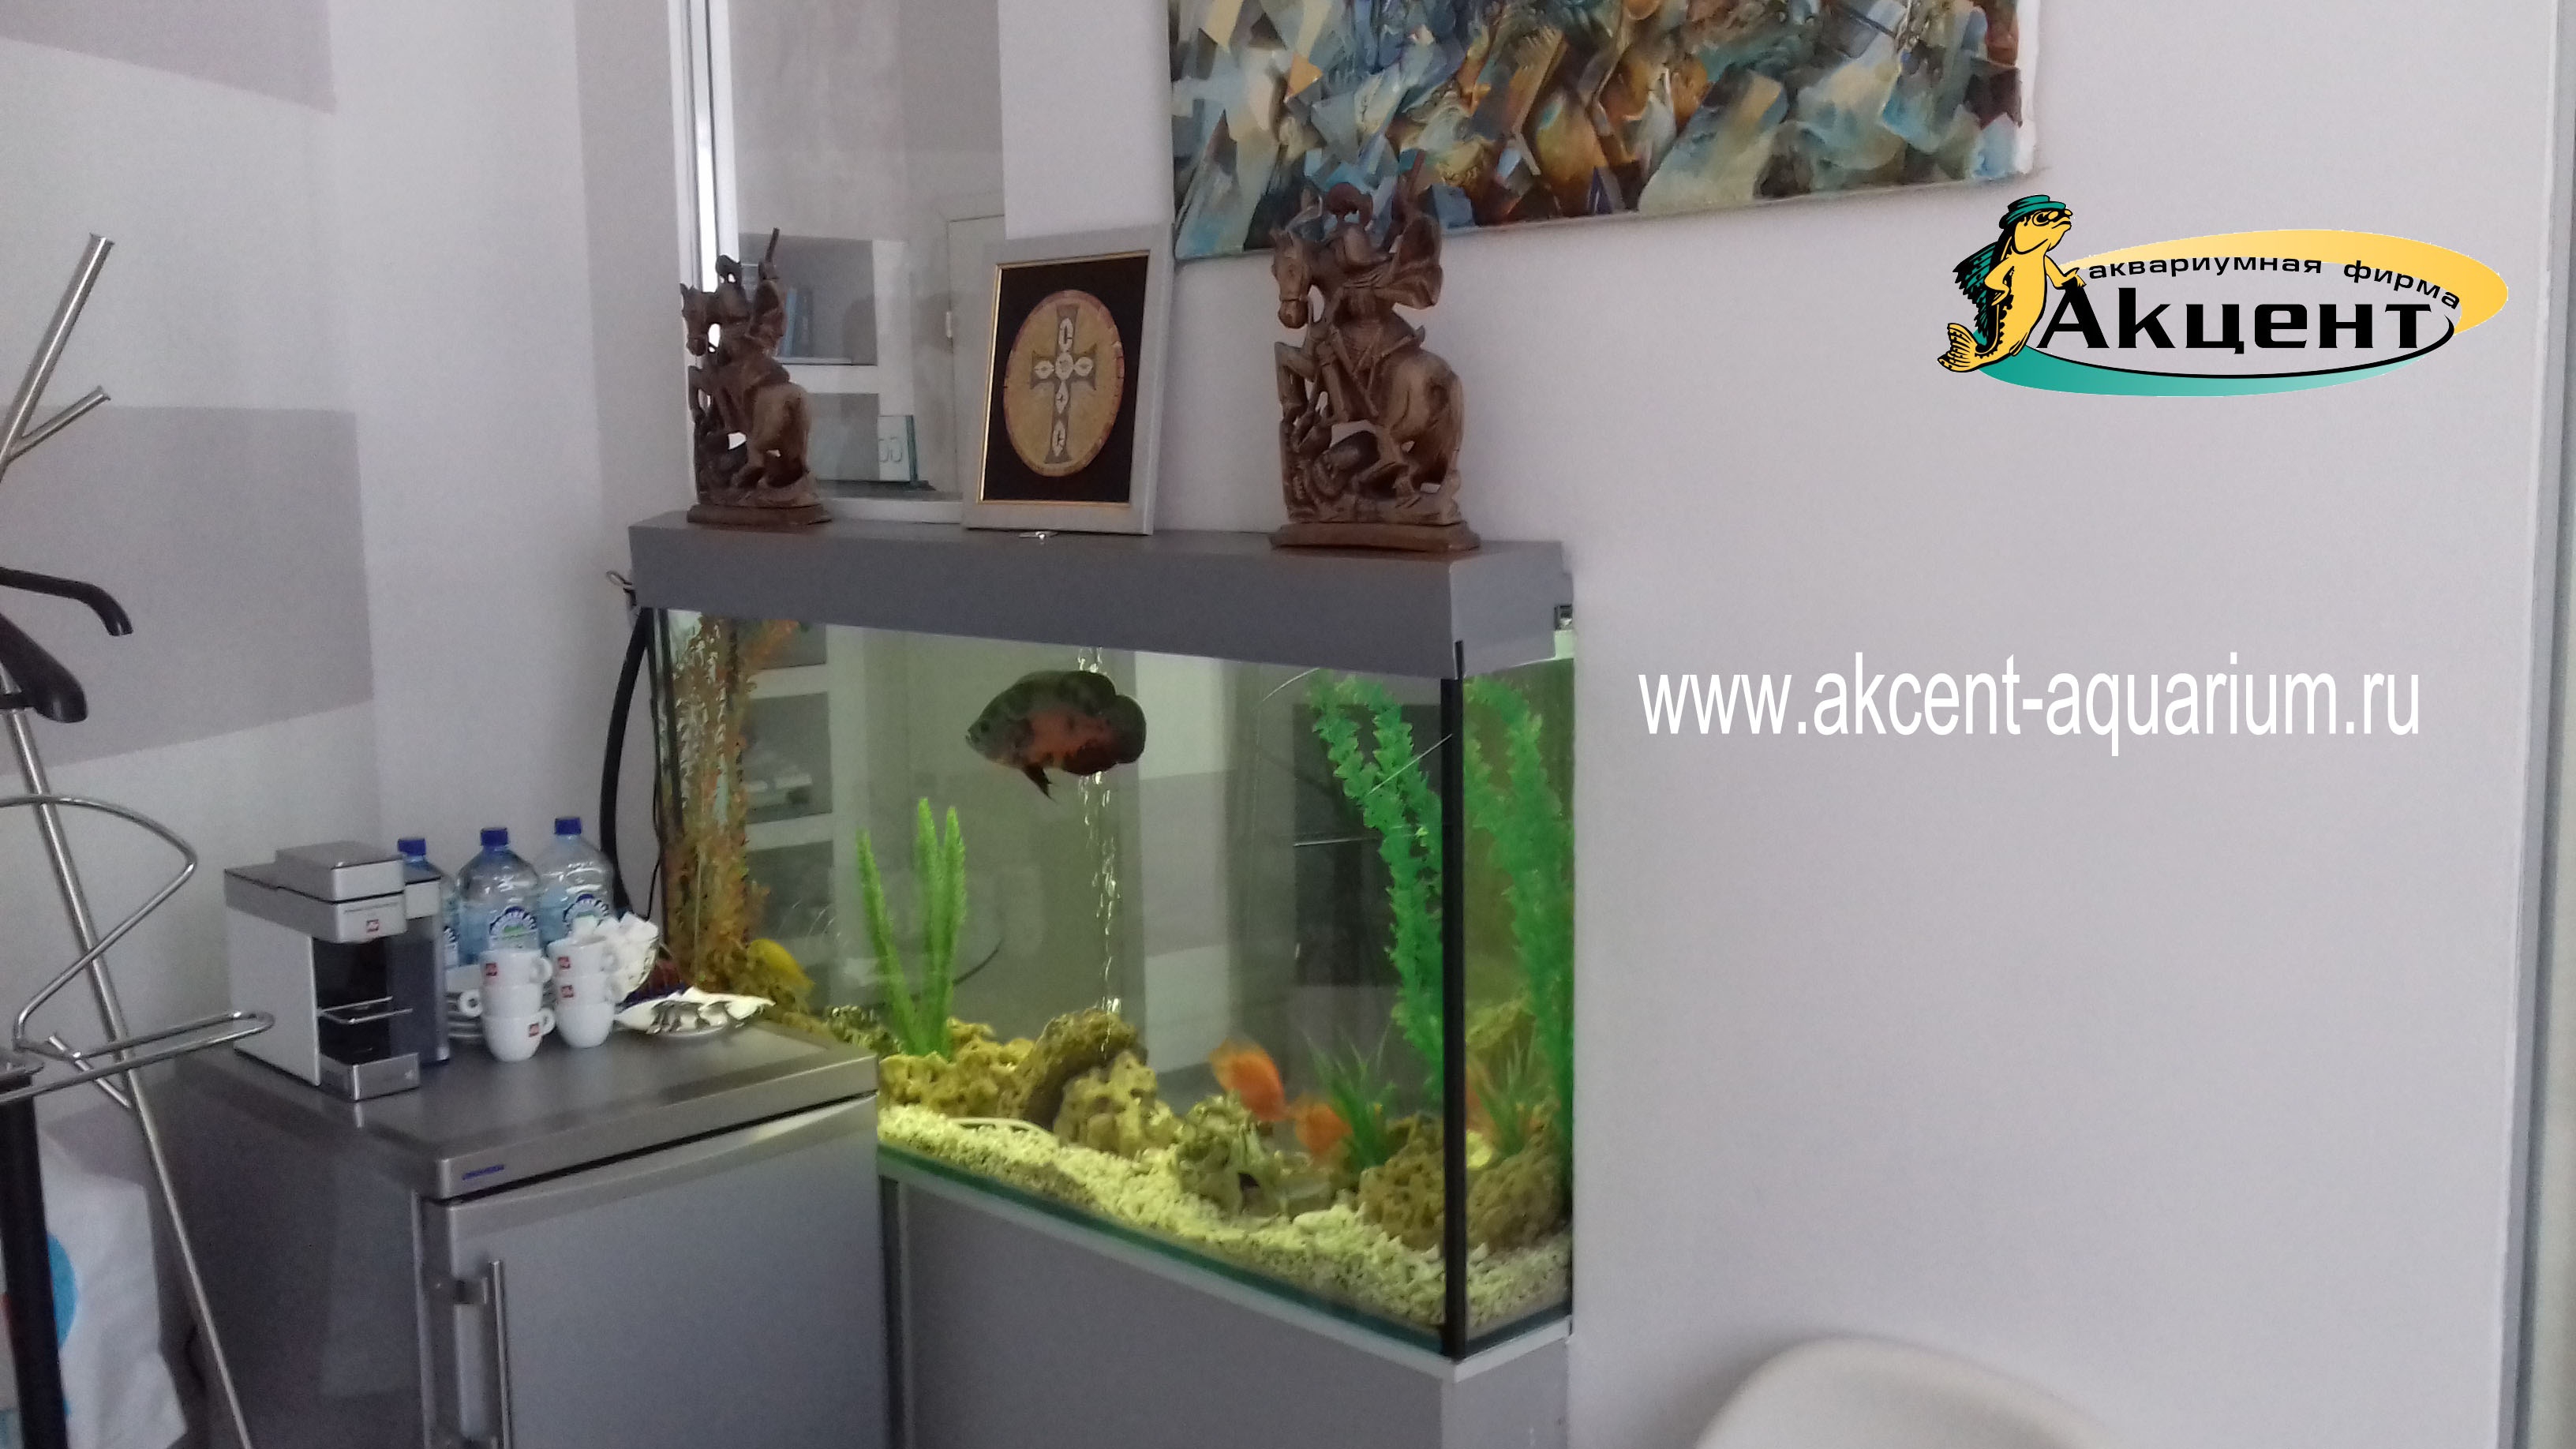 Акцент-аквариум,аквариум просмотровый 300 литров встроенный в стену